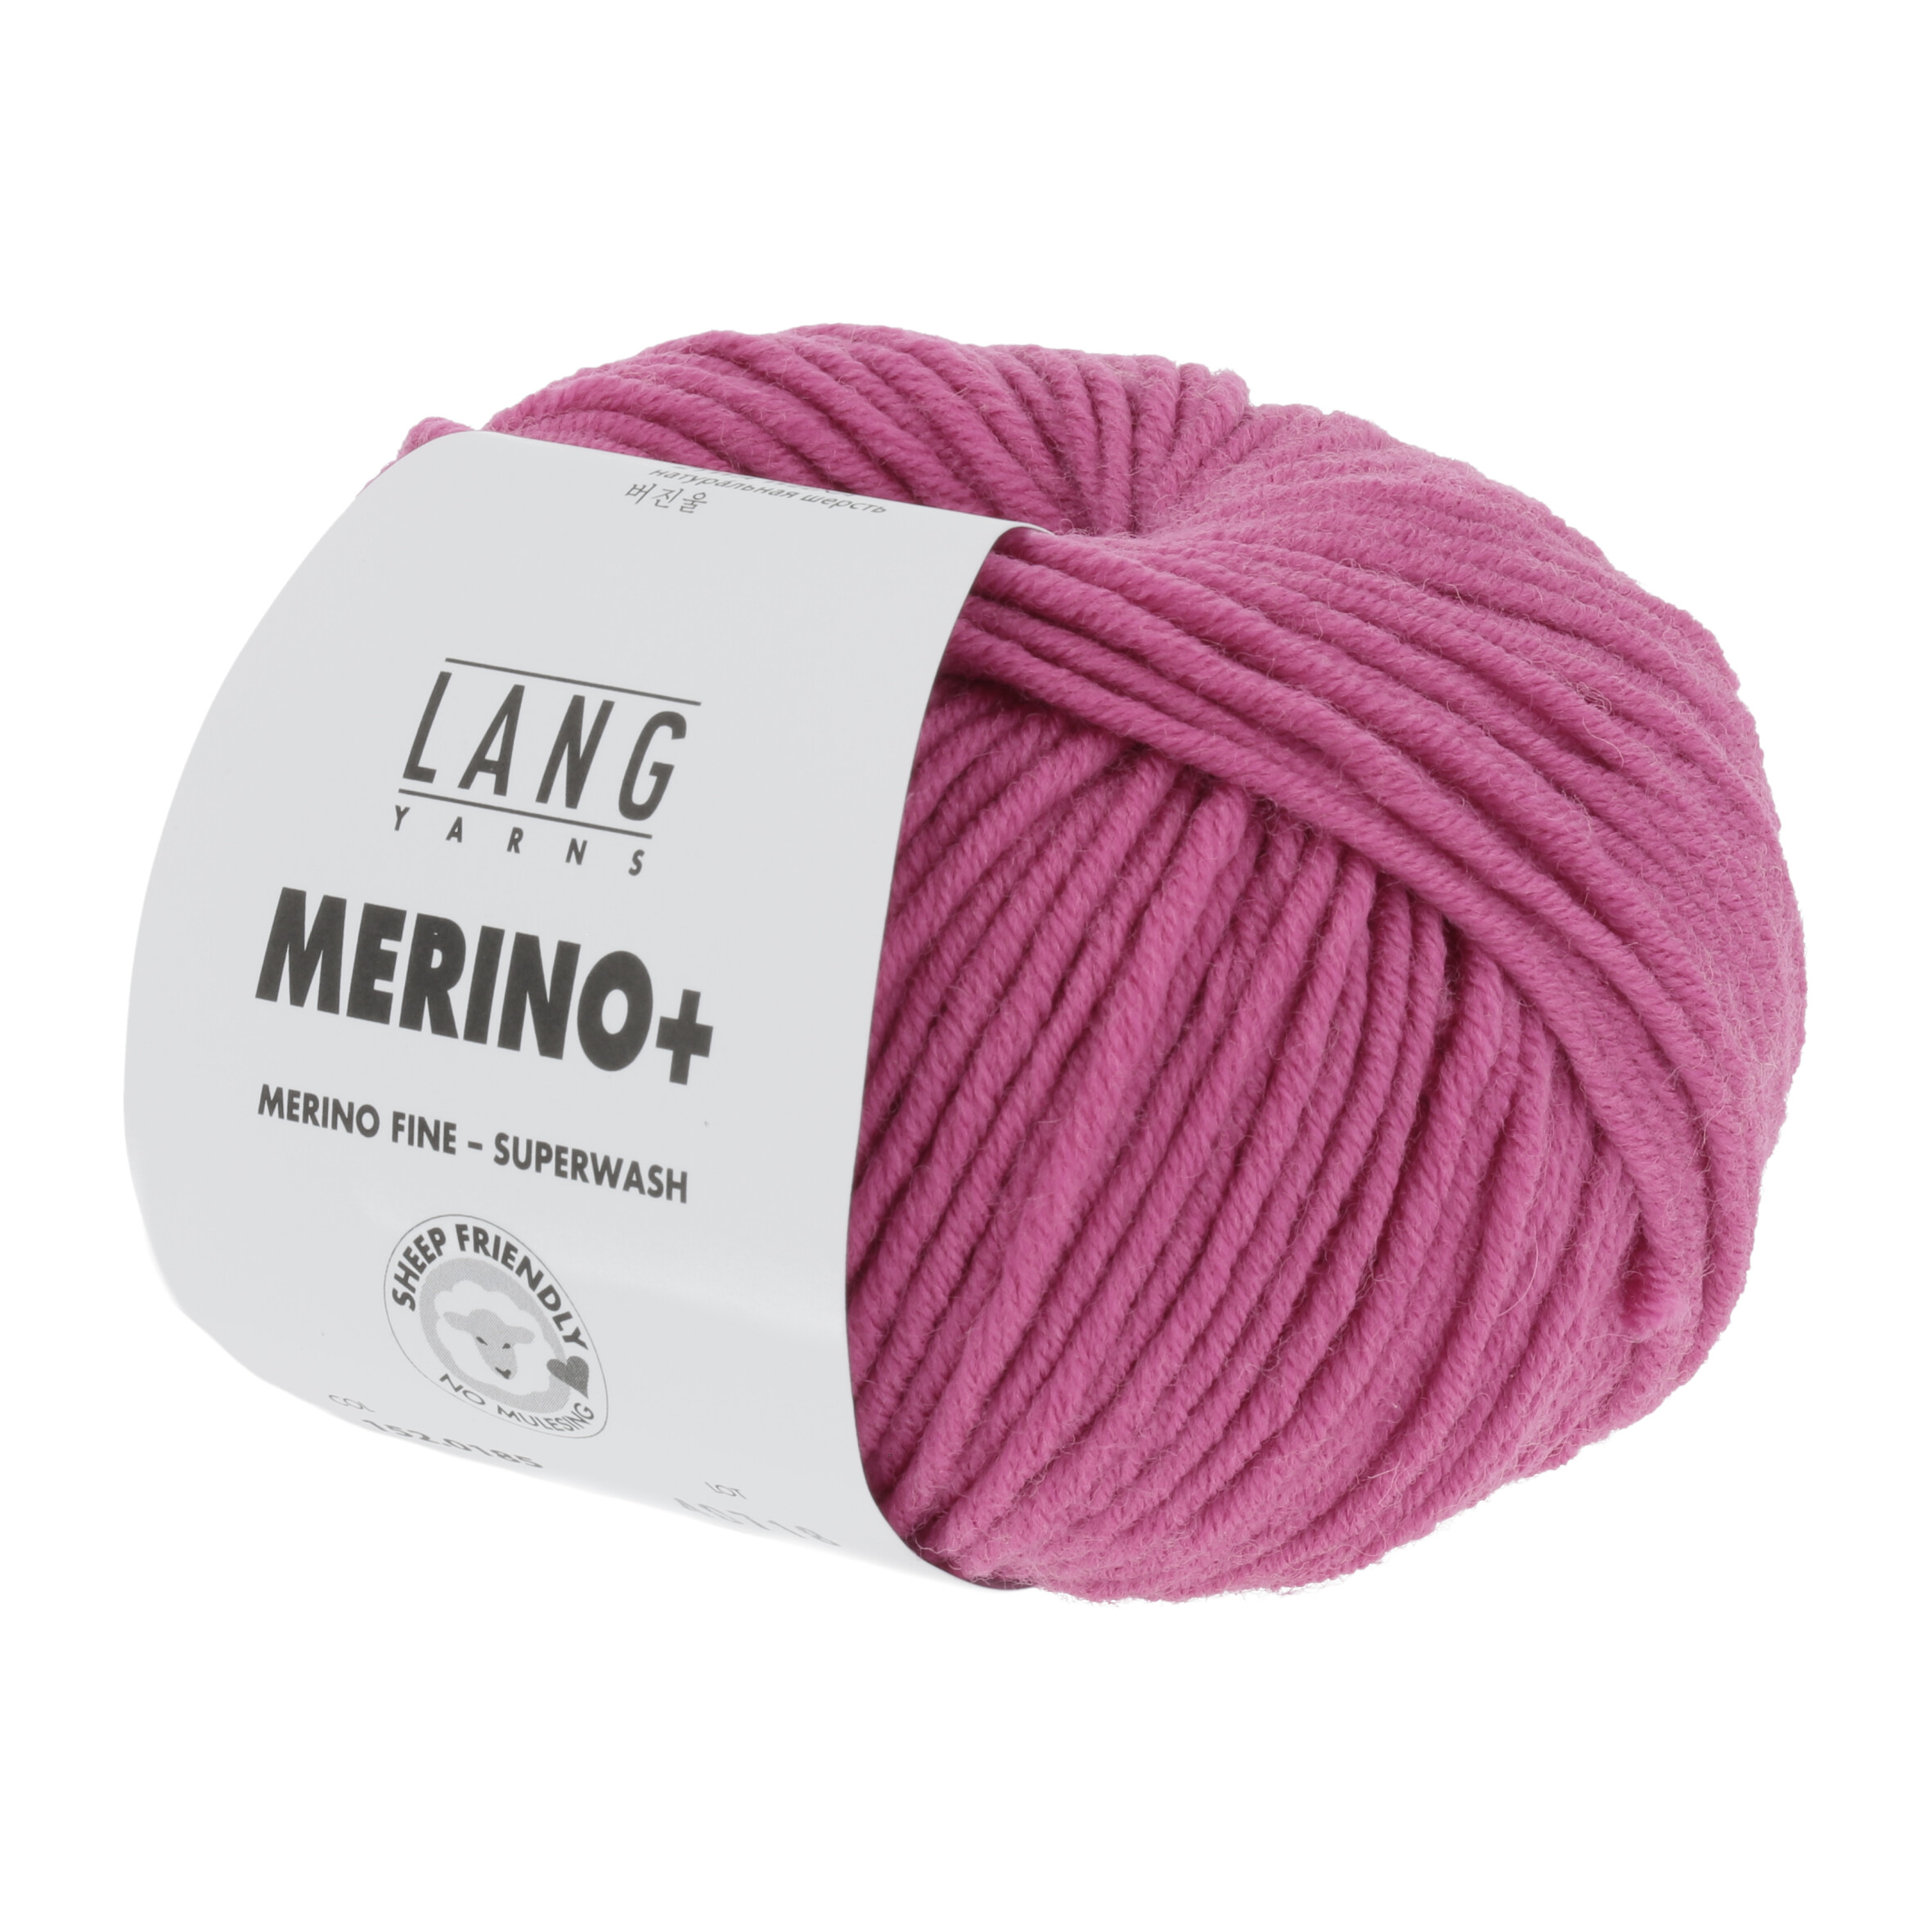 LANG MERINO + 50GR 0185 PINK